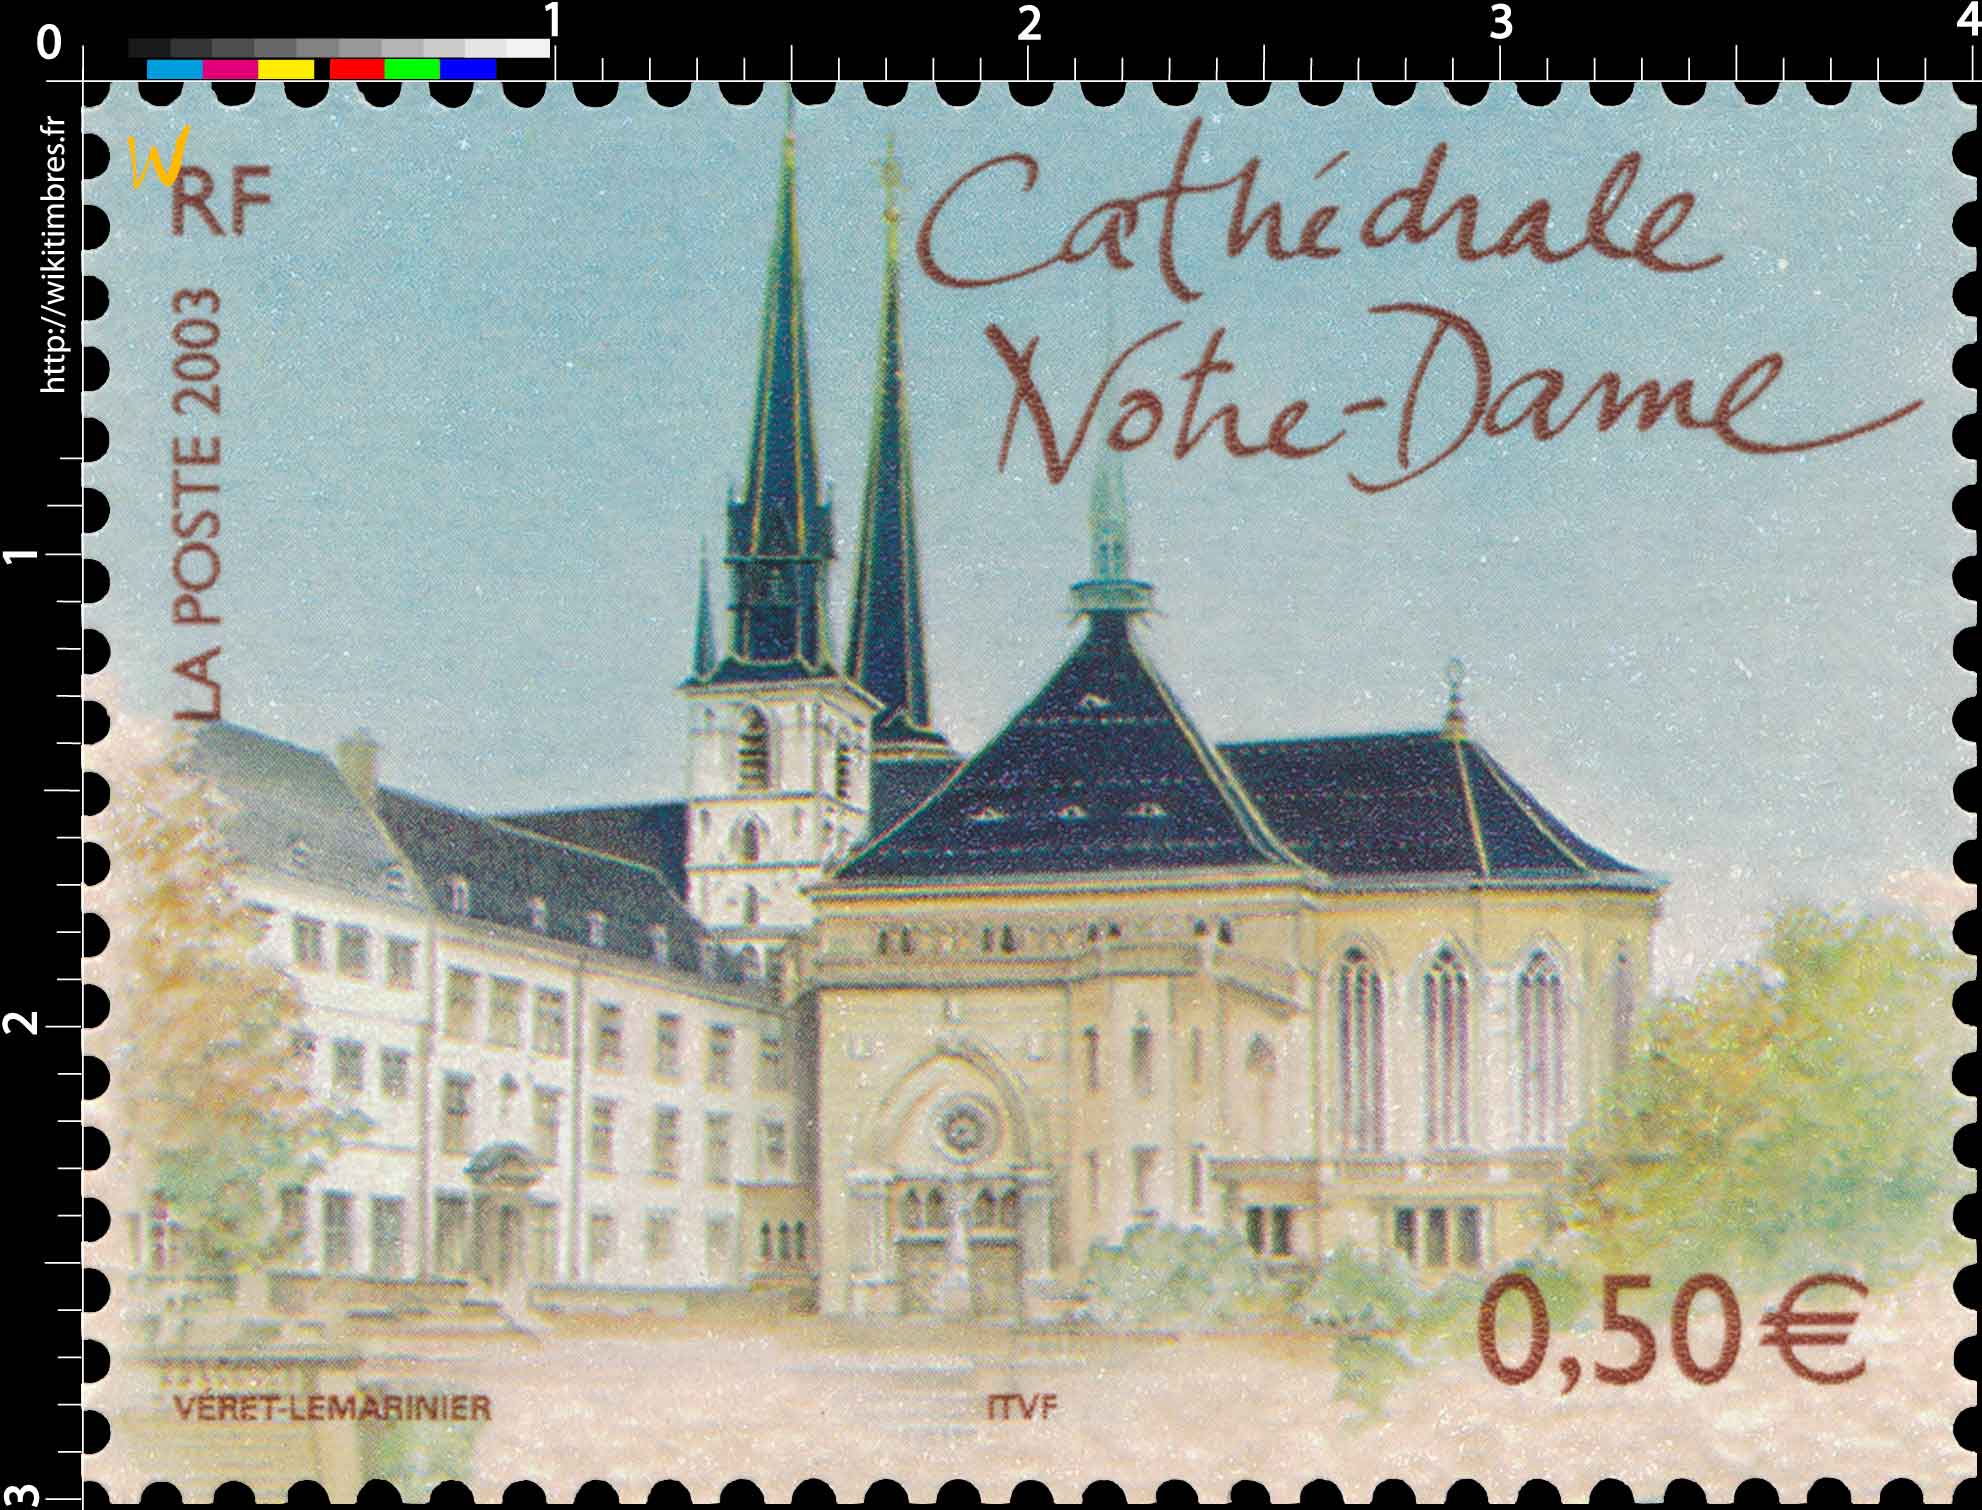 2003 Cathédrale Notre-Dame